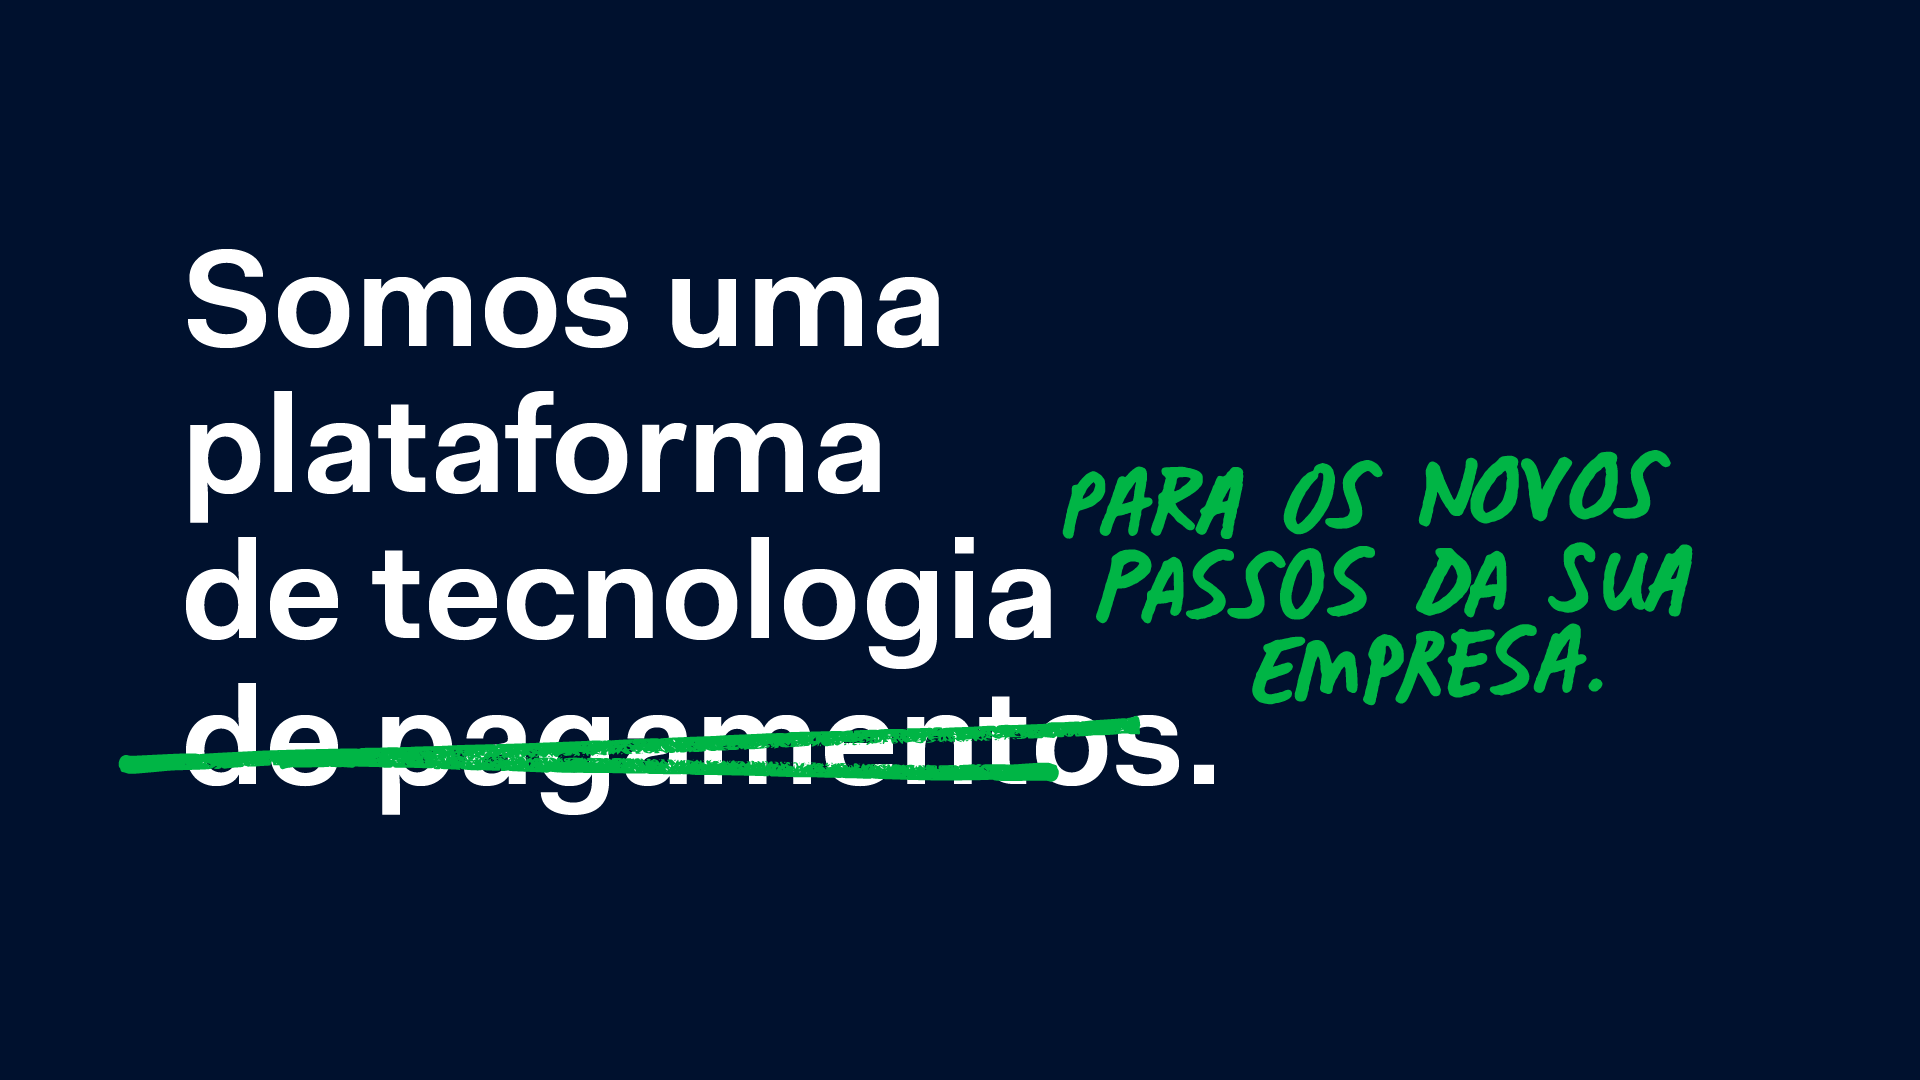 Adyen lança primeira campanha publicitária feita totalmente no Brasil